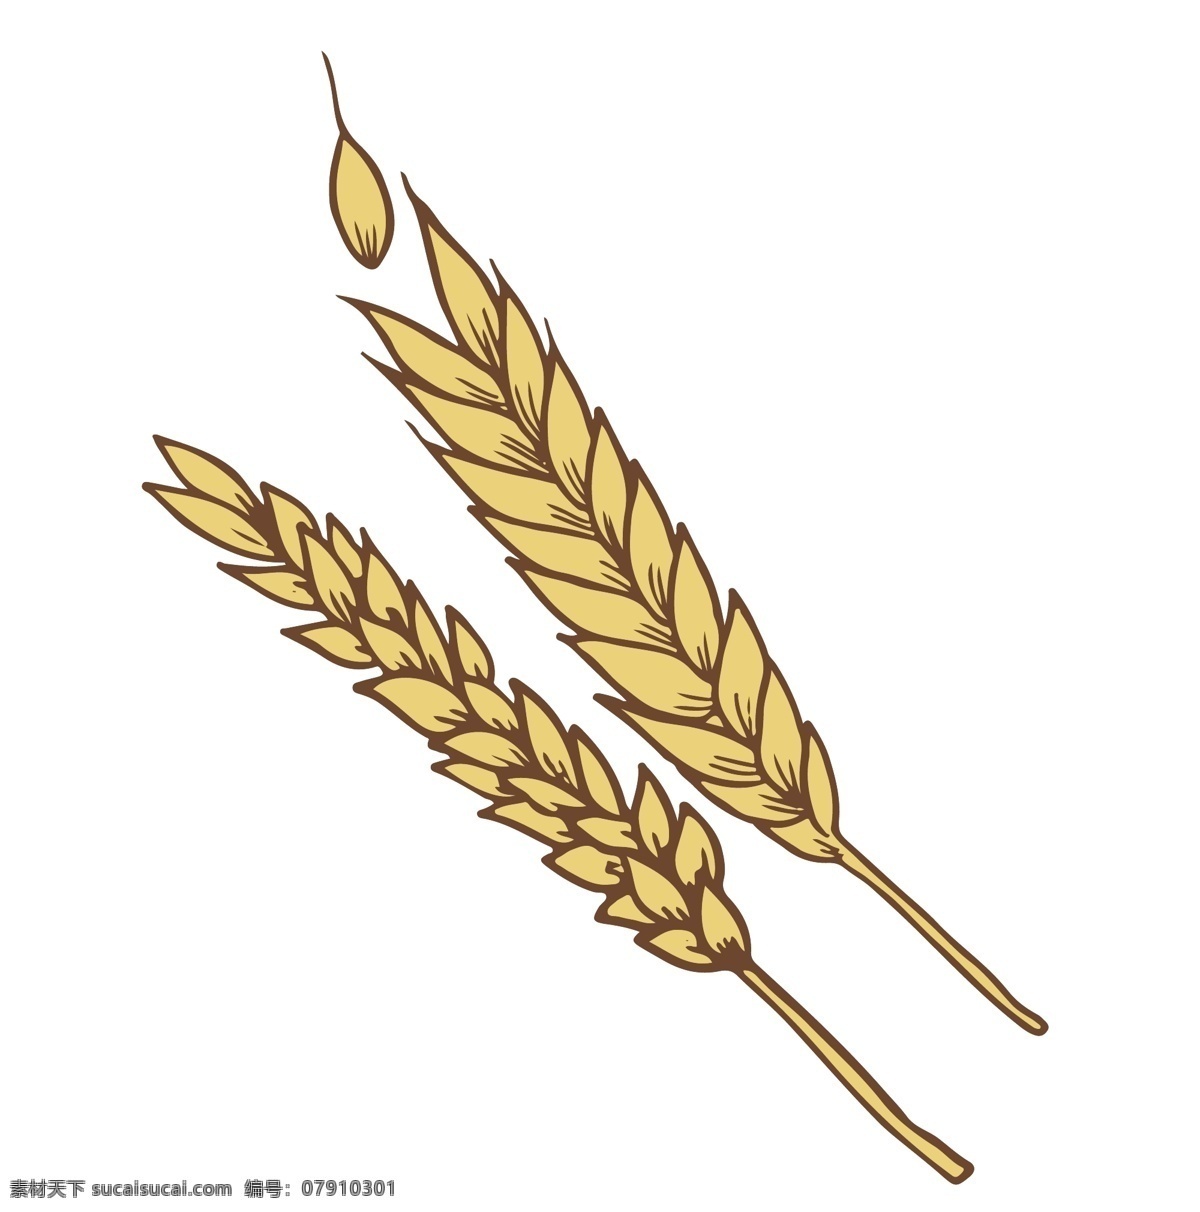 黄色成熟麦子 麦子 麦穗 农作物